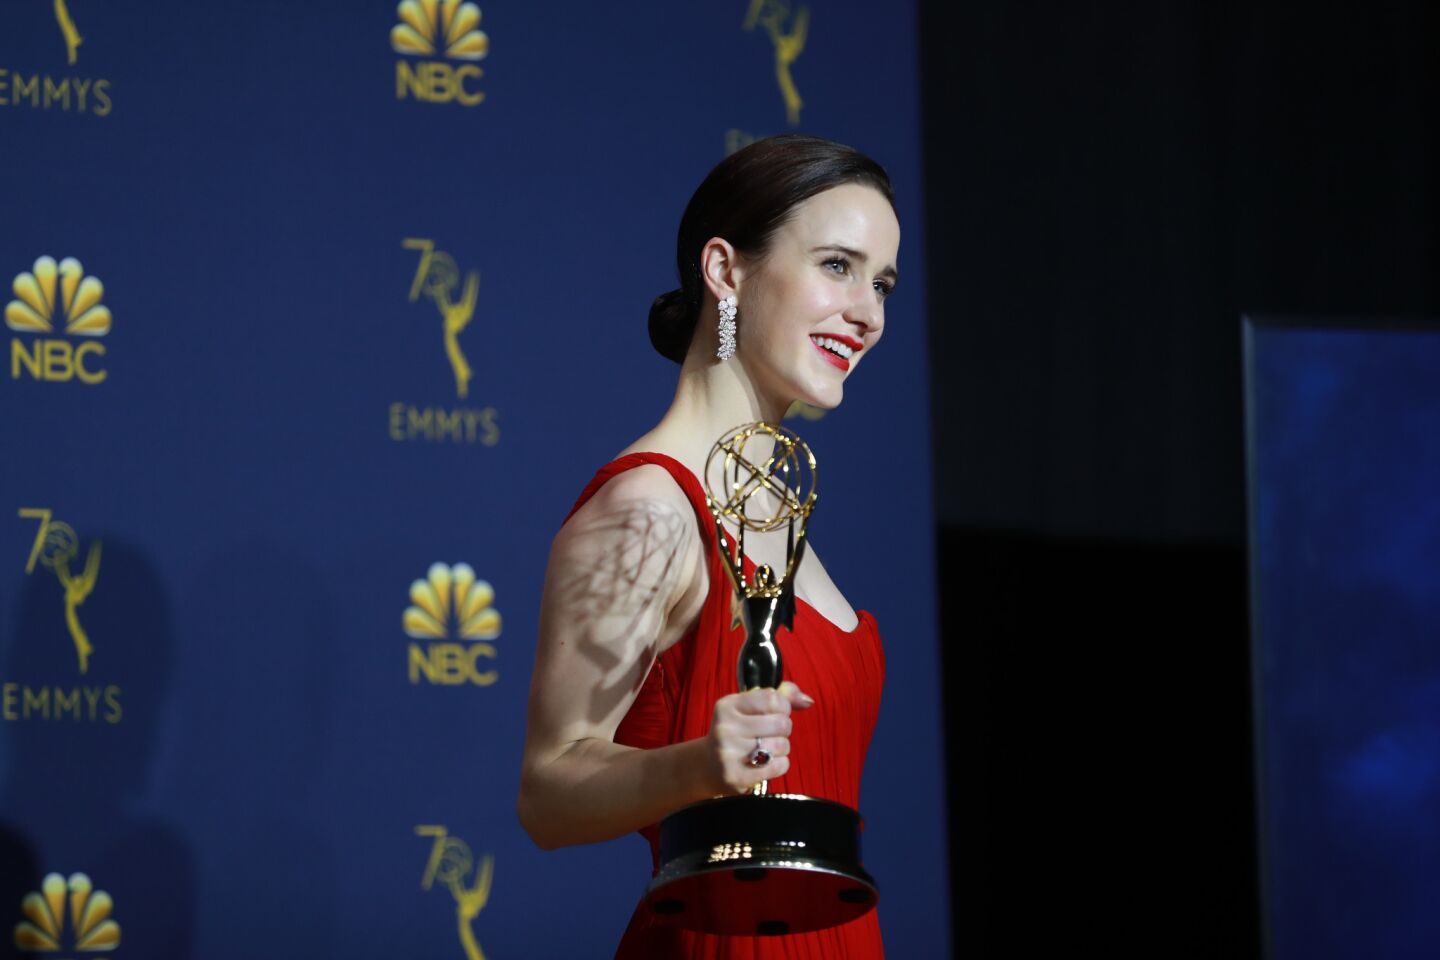 Emmy winners backstage